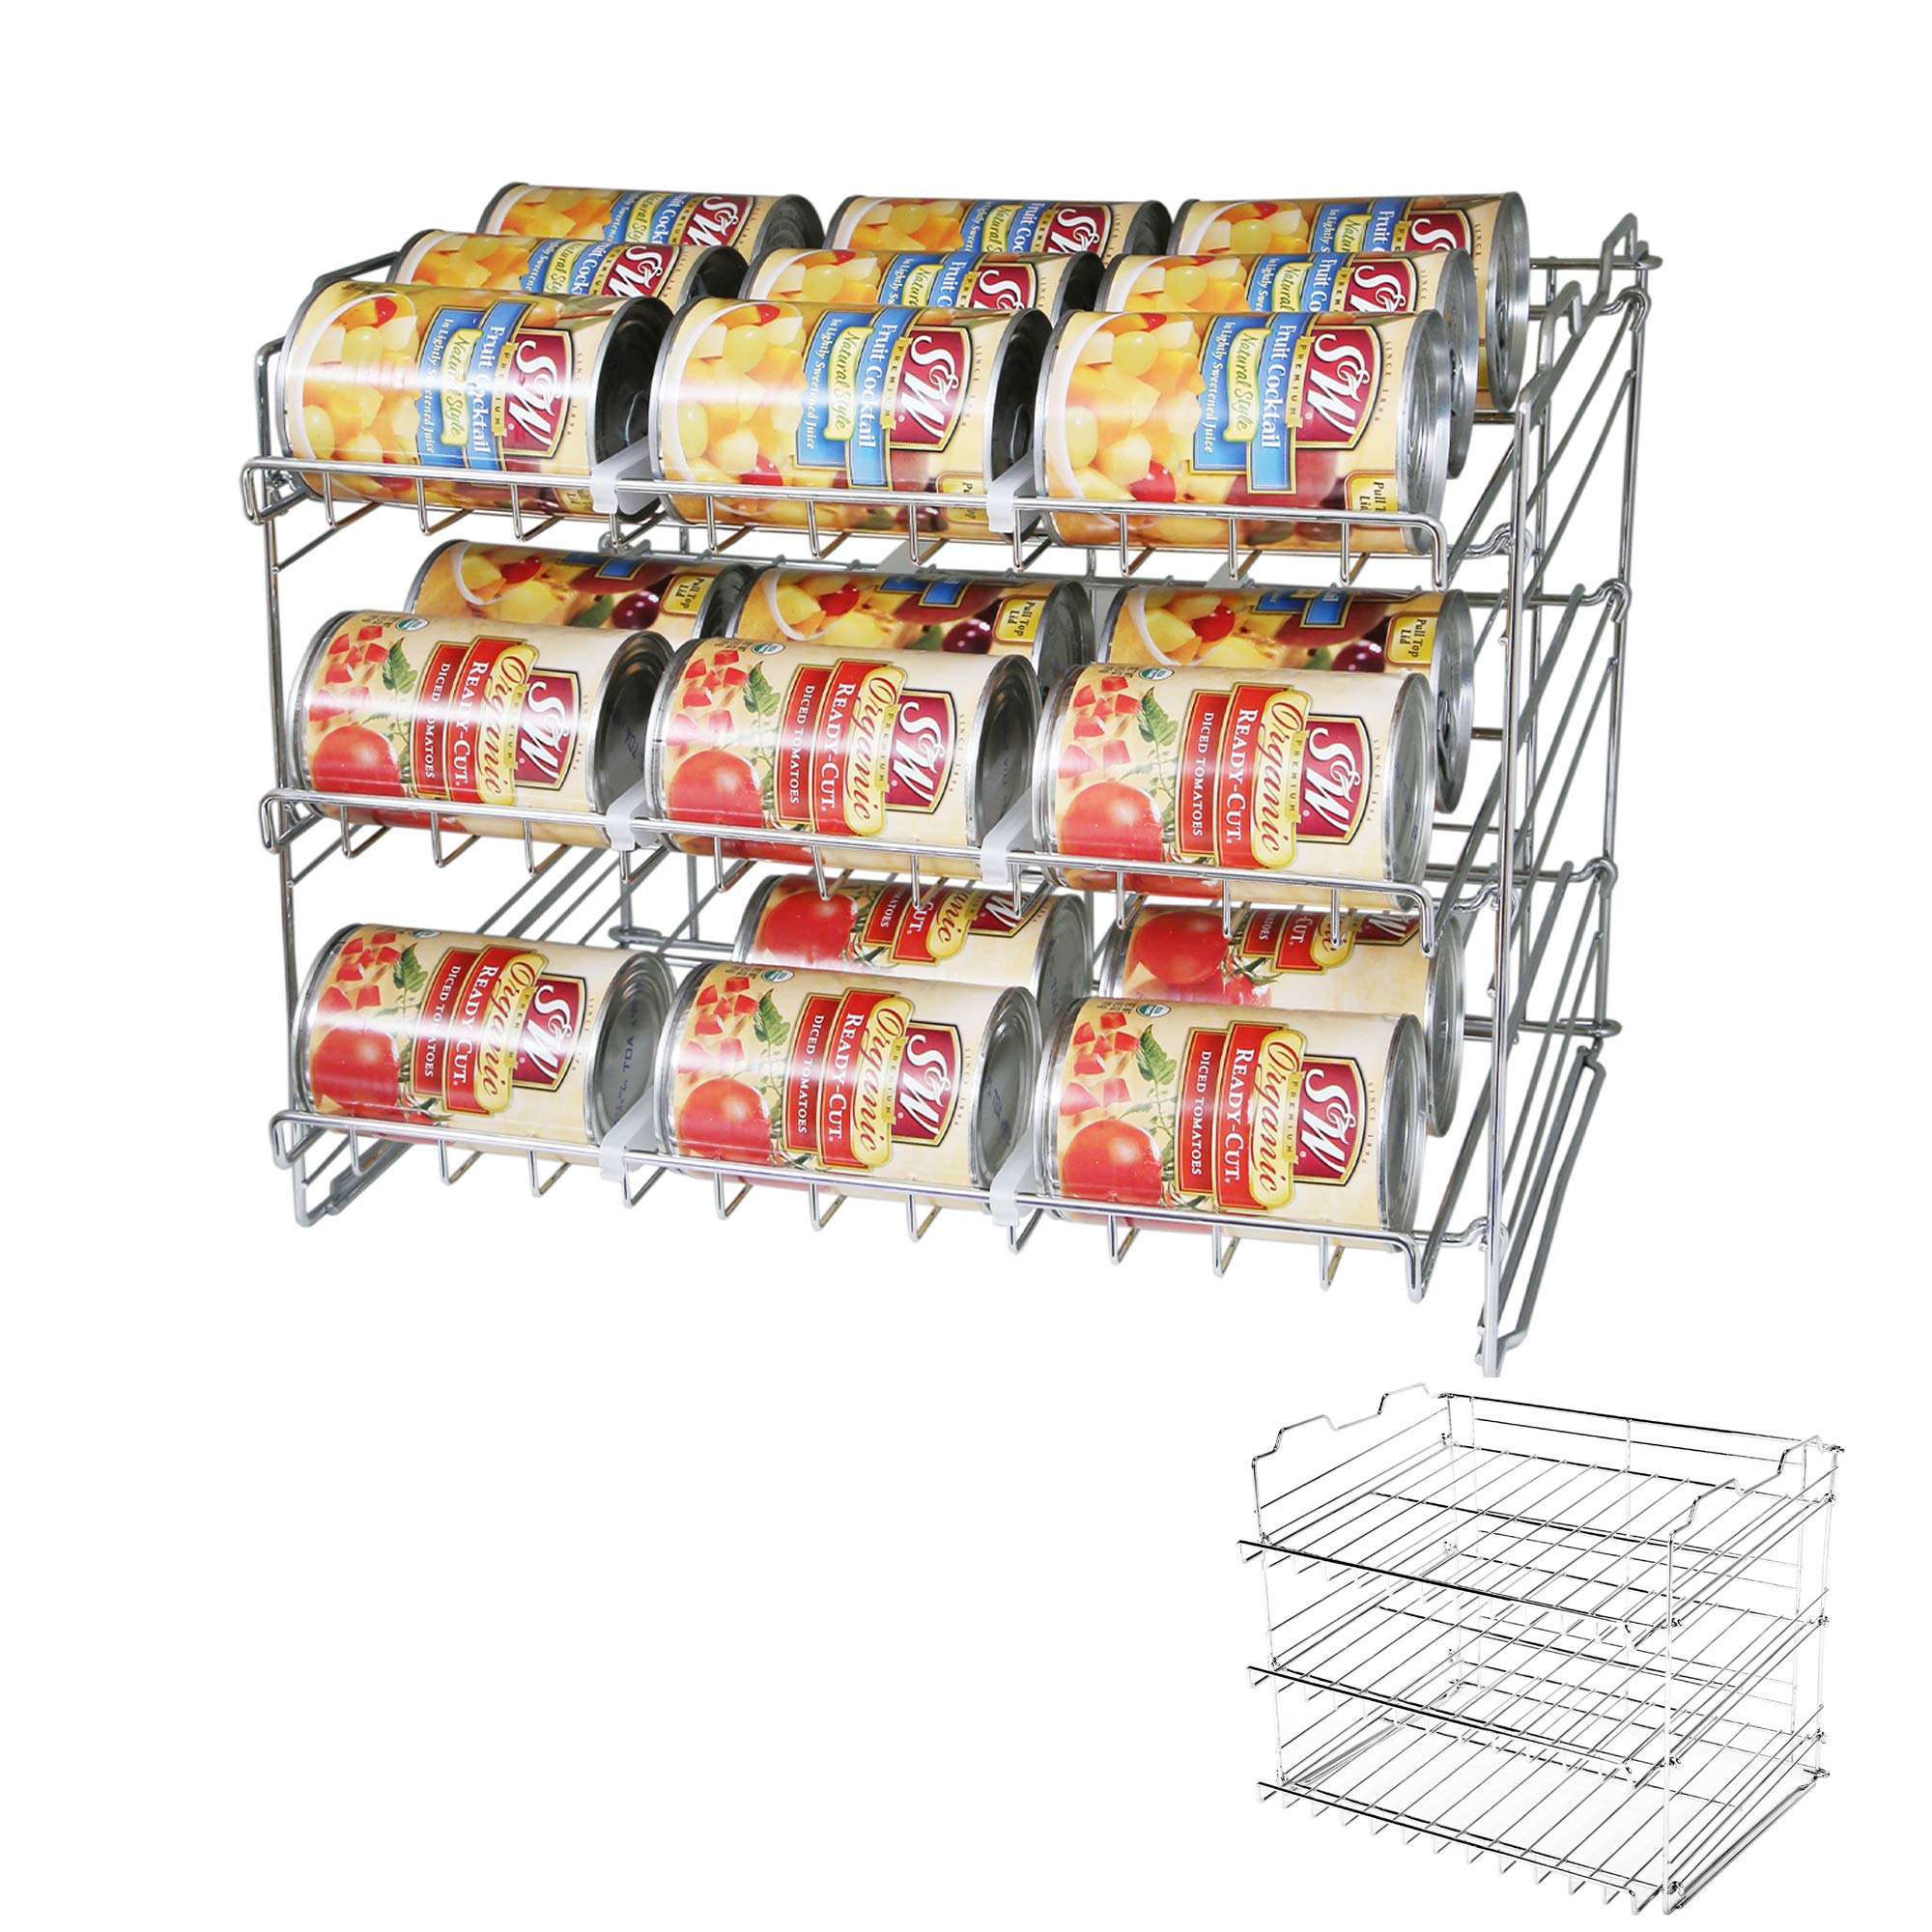 http://www.shopsmartdesign.com/cdn/shop/products/premium-3-tier-adjustable-can-rack-organizer-set-of-2-chrome-smart-design-kitchen-8481290as2-incrementing-number-720161.jpg?v=1679338103